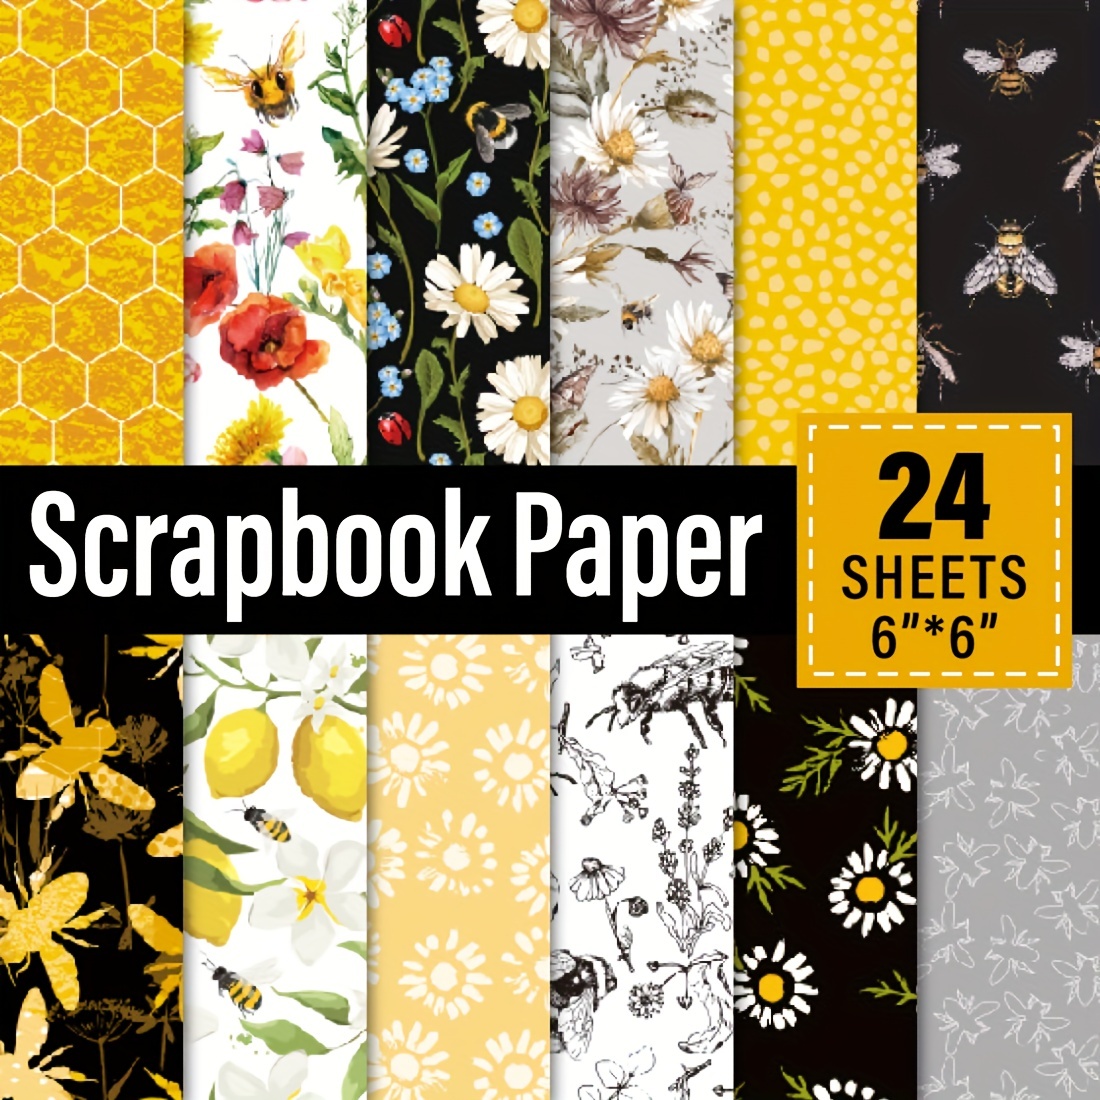 Scrapbook Paper 24 Sheets Craft Scrapbooking Paper Pad 6x6 Floral